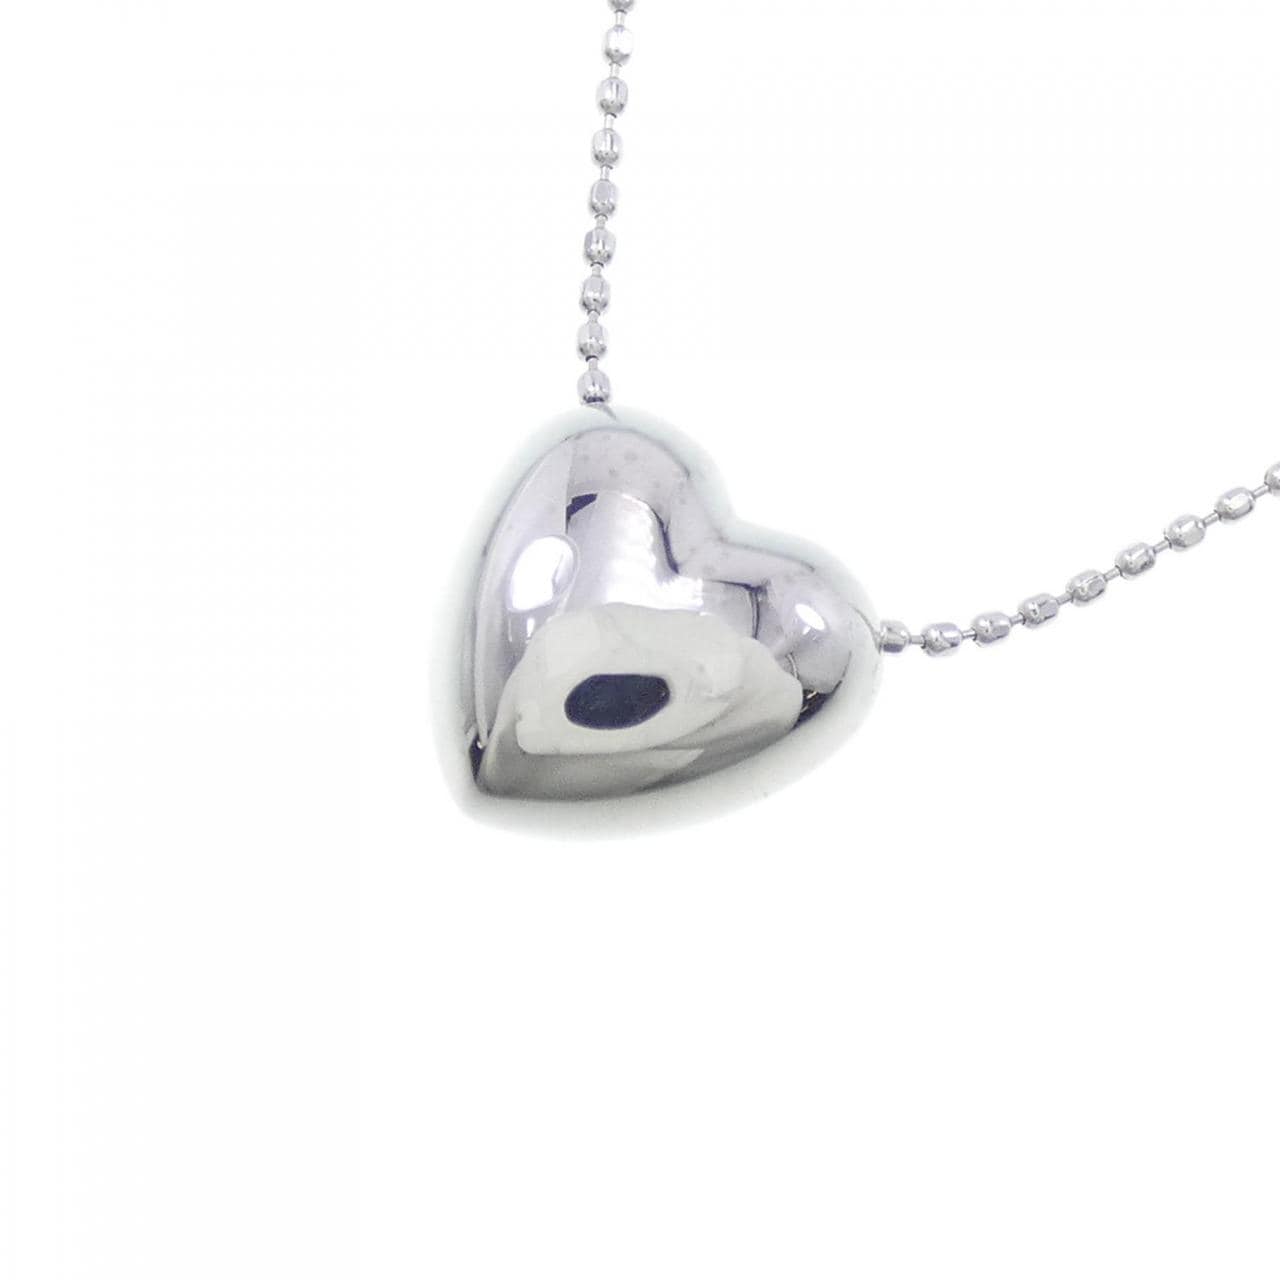 K18WG heart necklace